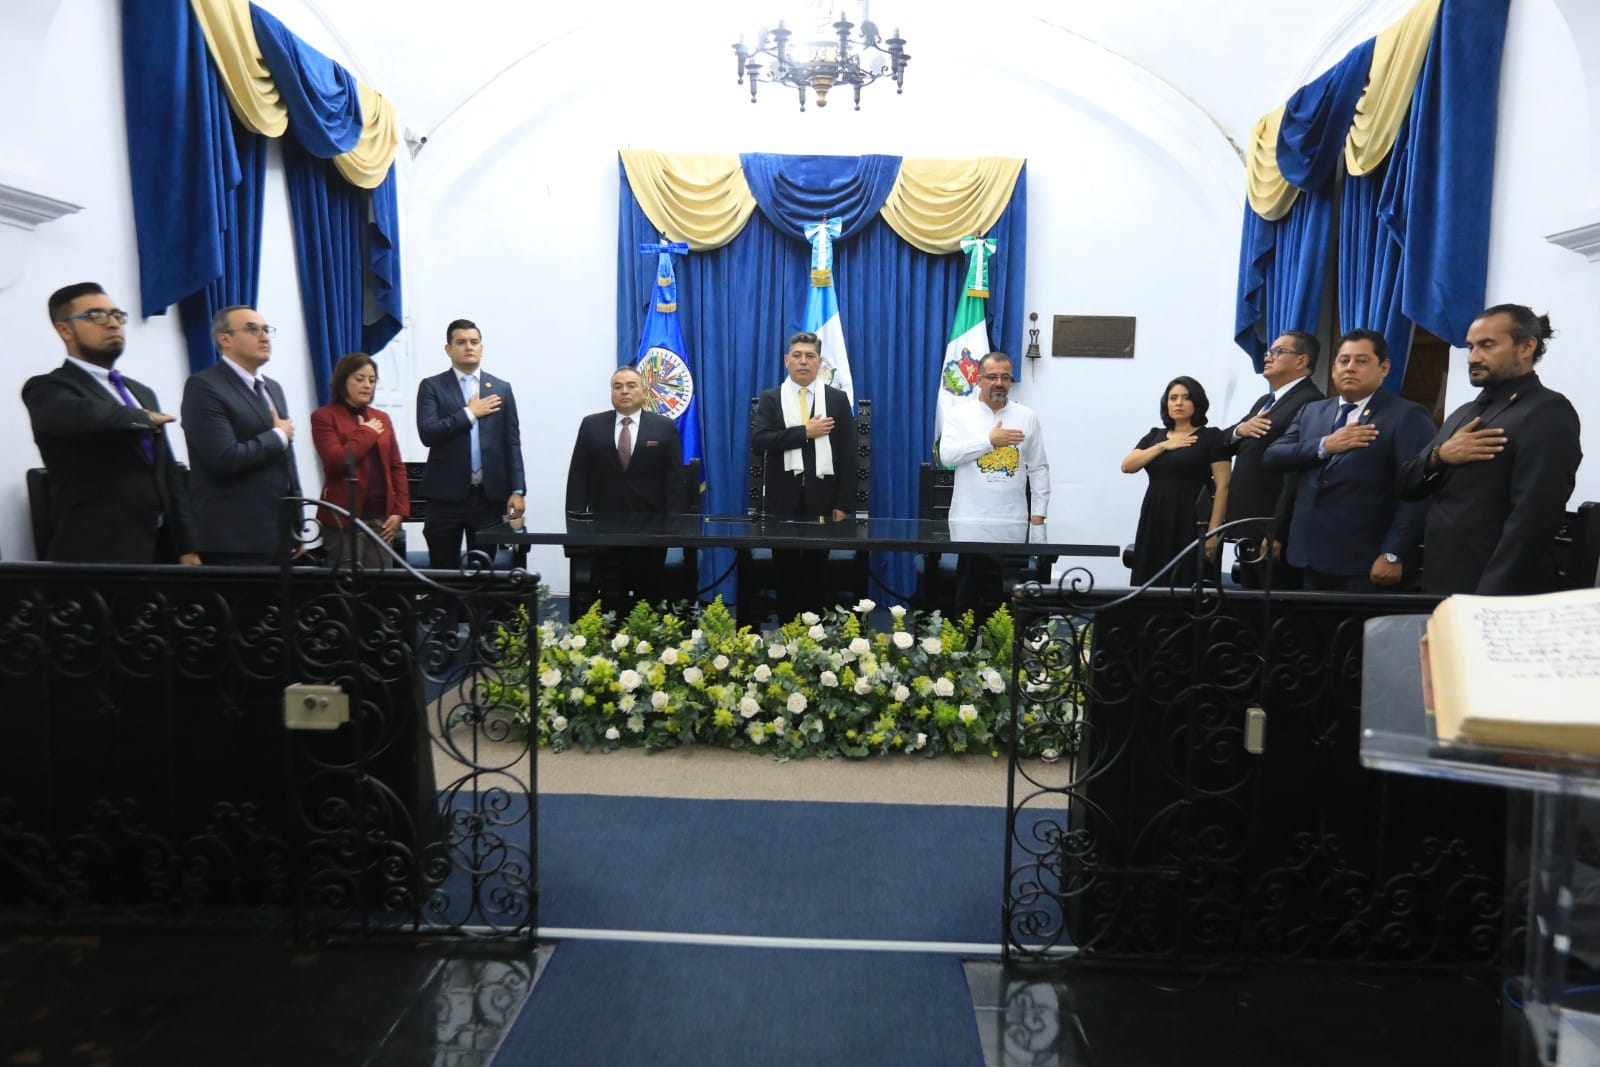 Secretario General Adjunto, Néstor Méndez, recibe la Llave de Honor de la Antigua Guatemala. Participaron Autoridades del Ministerio de Cultura y Deportes, y la Municipalidad de la Antigua Guatemala.